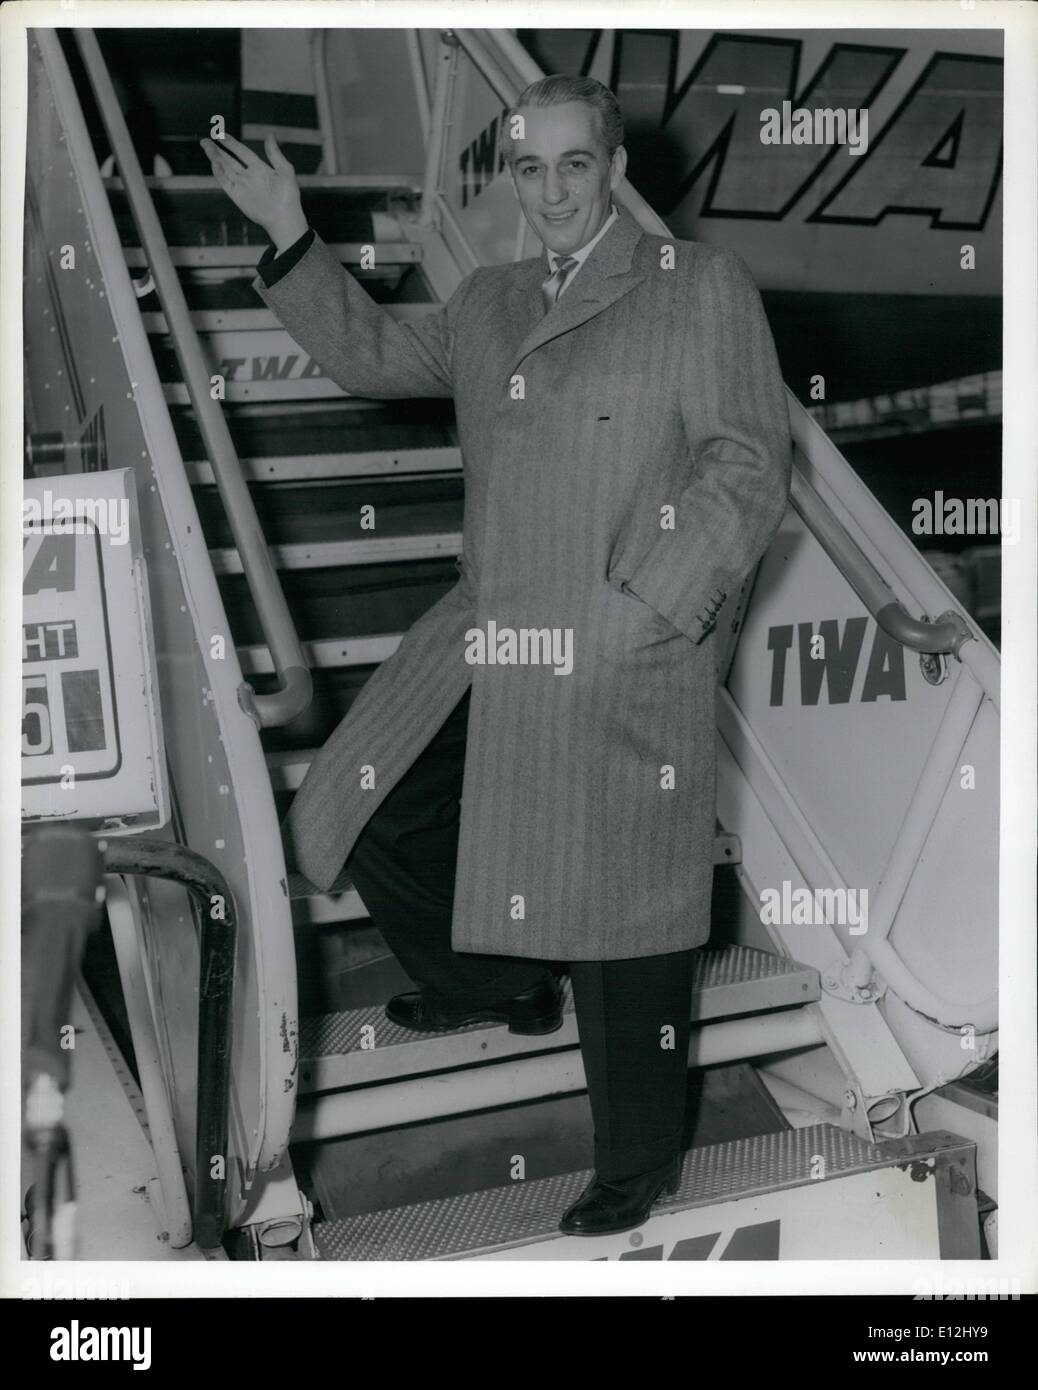 24 février 2012 - L'aéroport de La Guardia, N.Y., 19 avril --- New York Xtimesman Clifton Daniel monte à bord d'un avion de la TWA ici aujourd'hui à Kansas City, Mo., pour son mariage samedi à Mlle Margaret Truman, fille de l'ancien président Truman. Banque D'Images